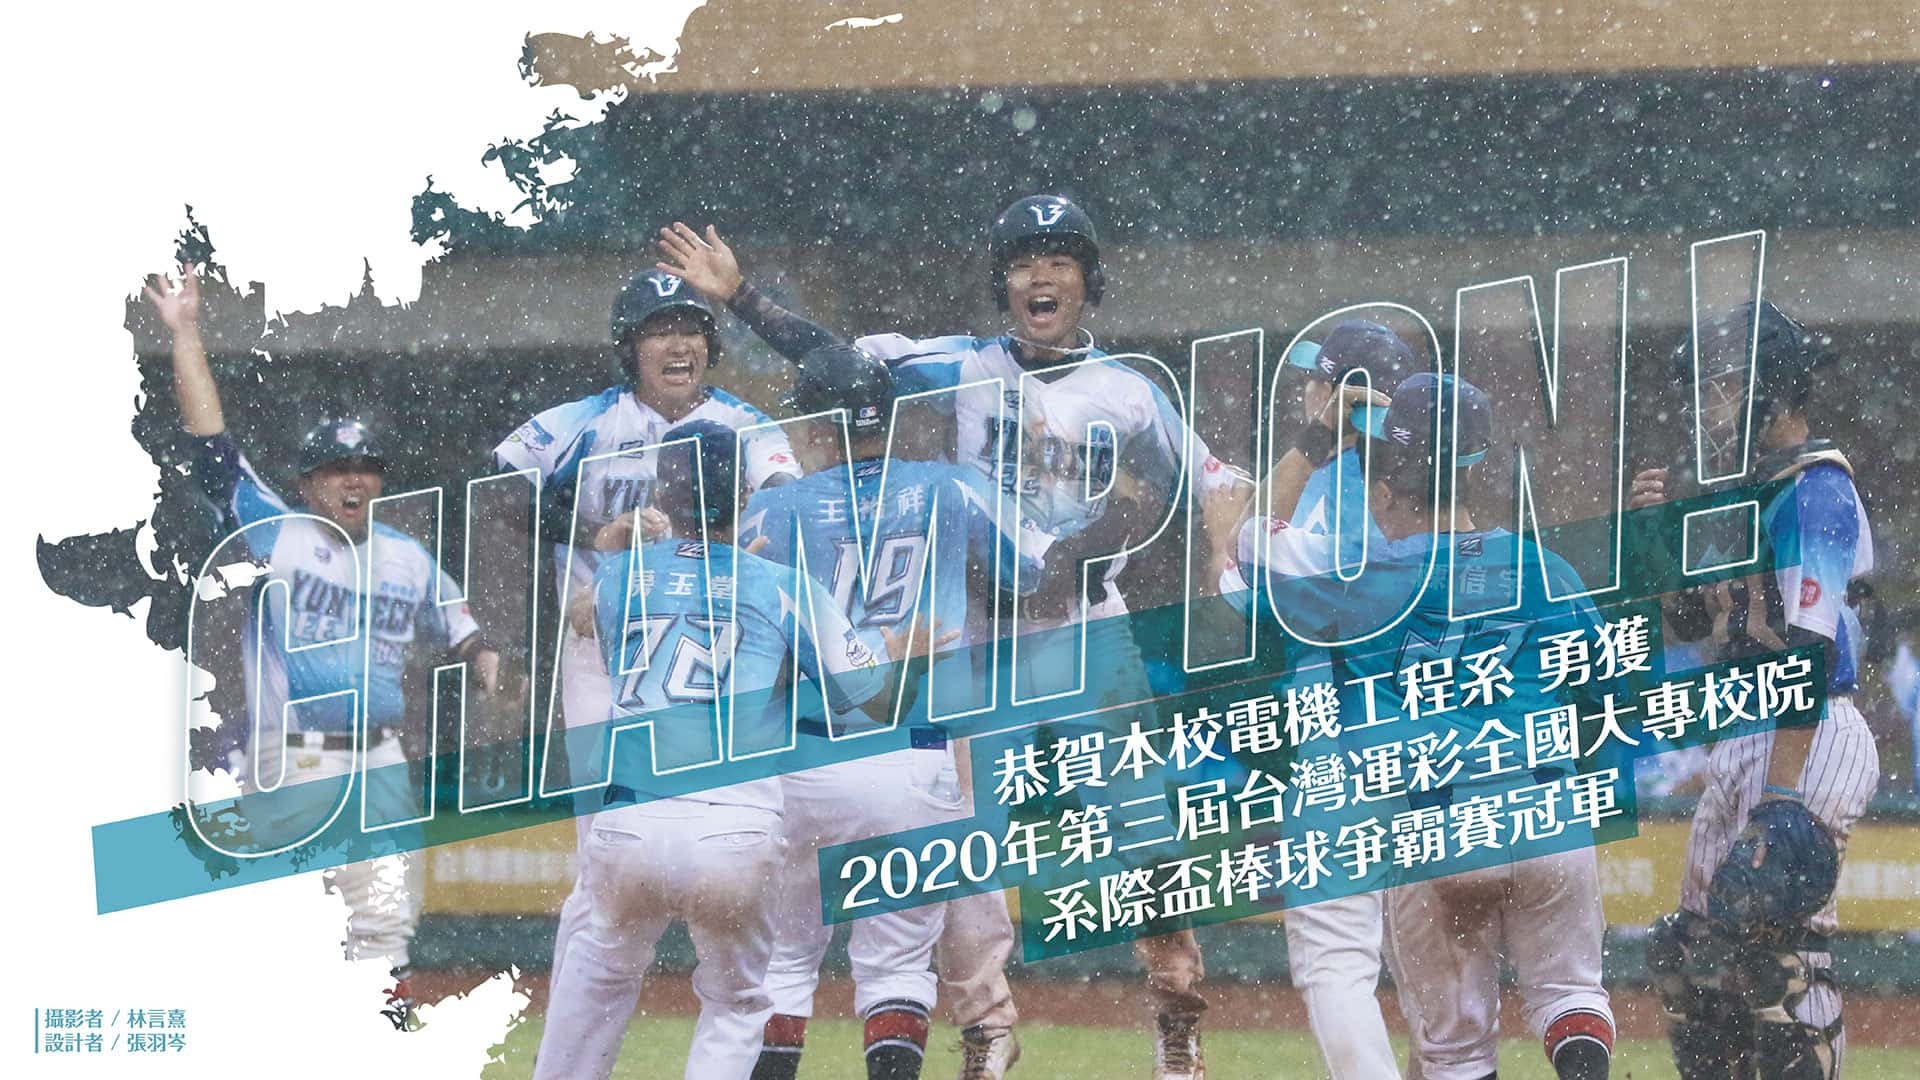 恭賀本校電機工程系勇獲2020年第三屆台灣運彩全國大專校院系際盃棒球爭霸賽冠軍